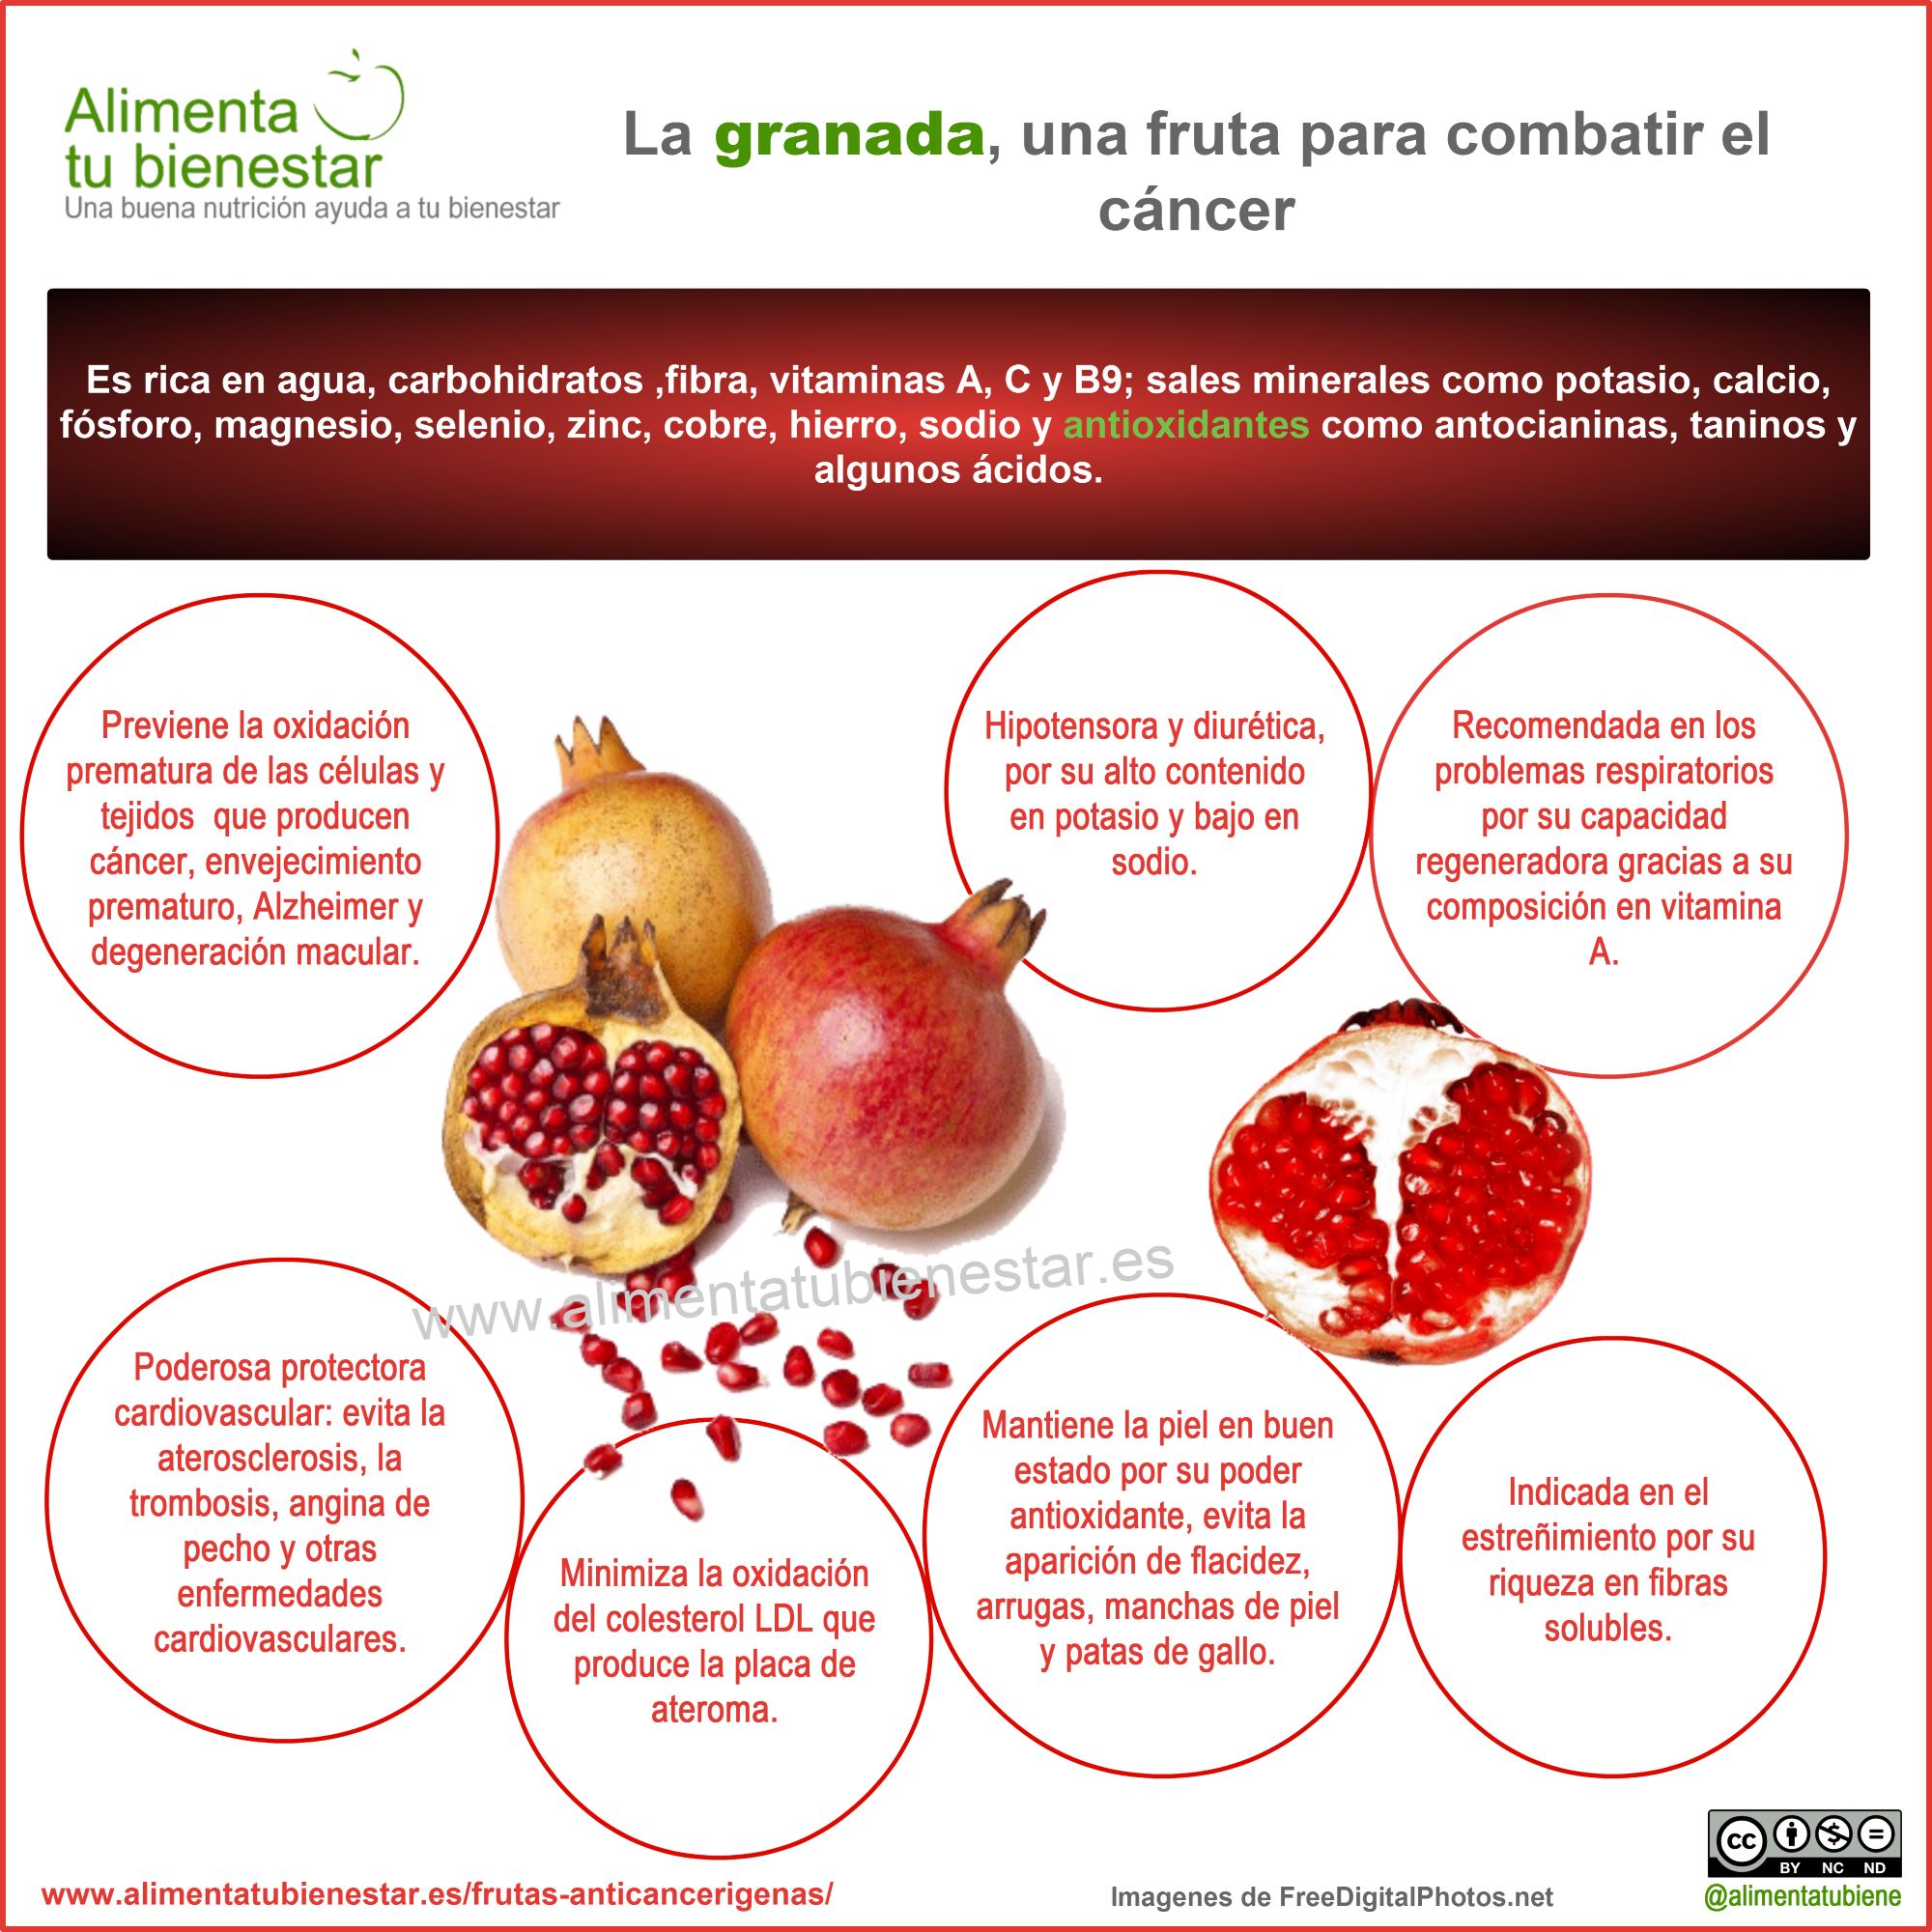 Frutas antiancerígenas: la granada